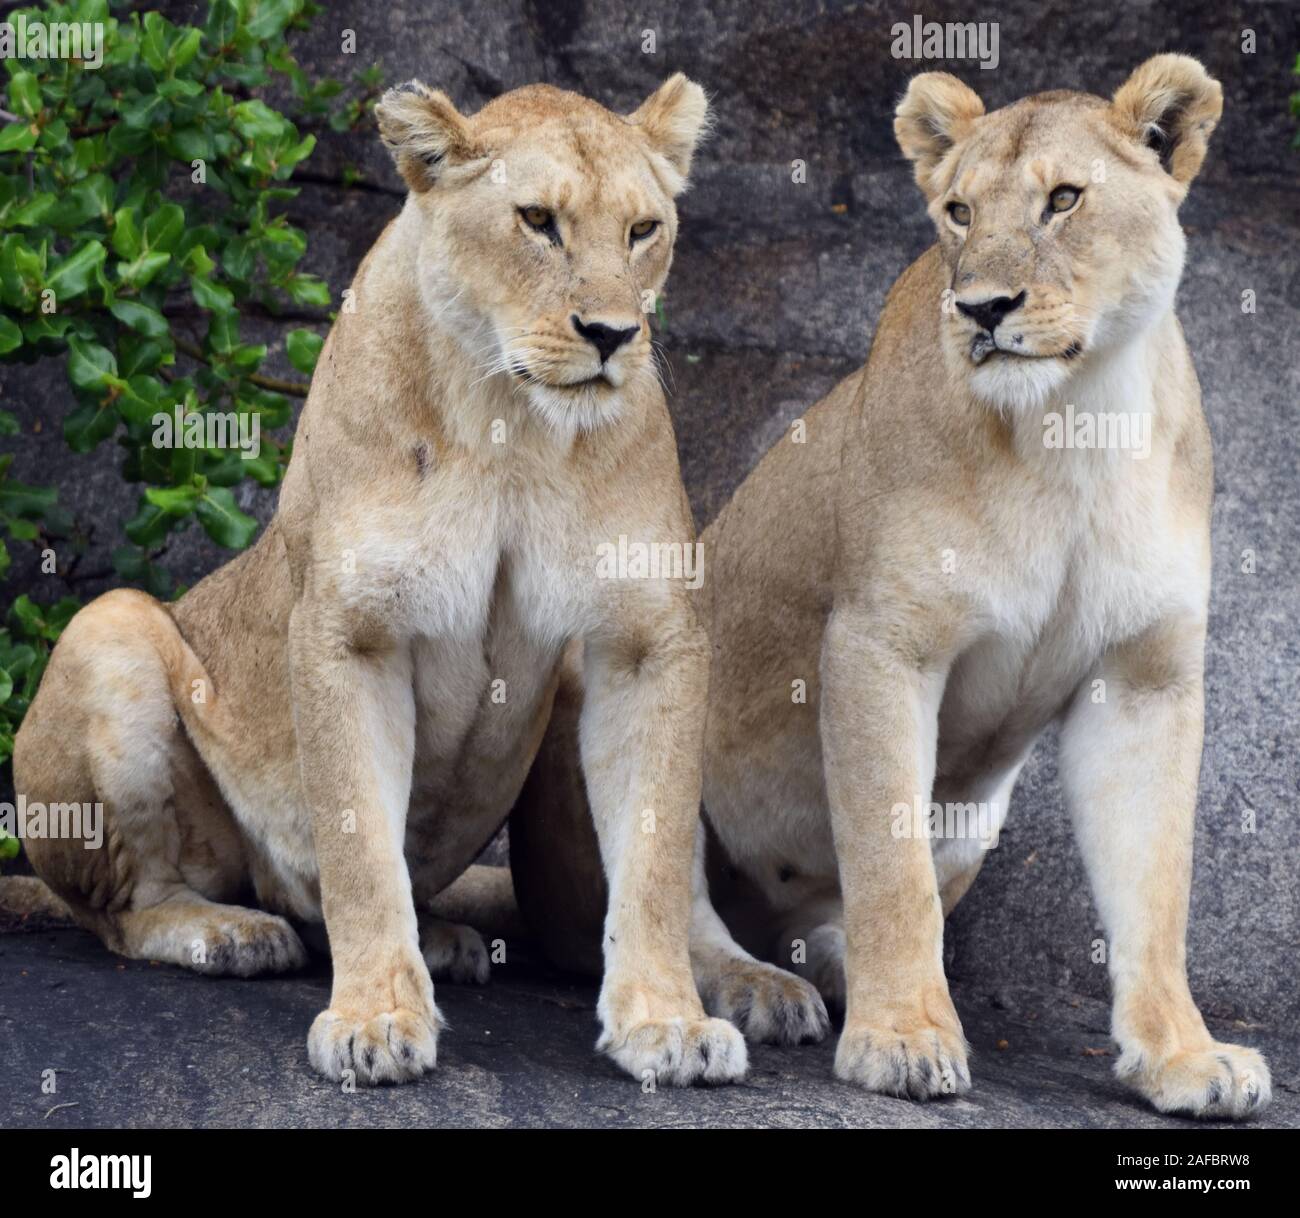 Deux femmes lions (Panthera leo), peut-être, dans un endroit ombragé, près d'où au moins deux jeux d'oursons sont en train de jouer. Parc national de Serengeti, Tanzanie Banque D'Images